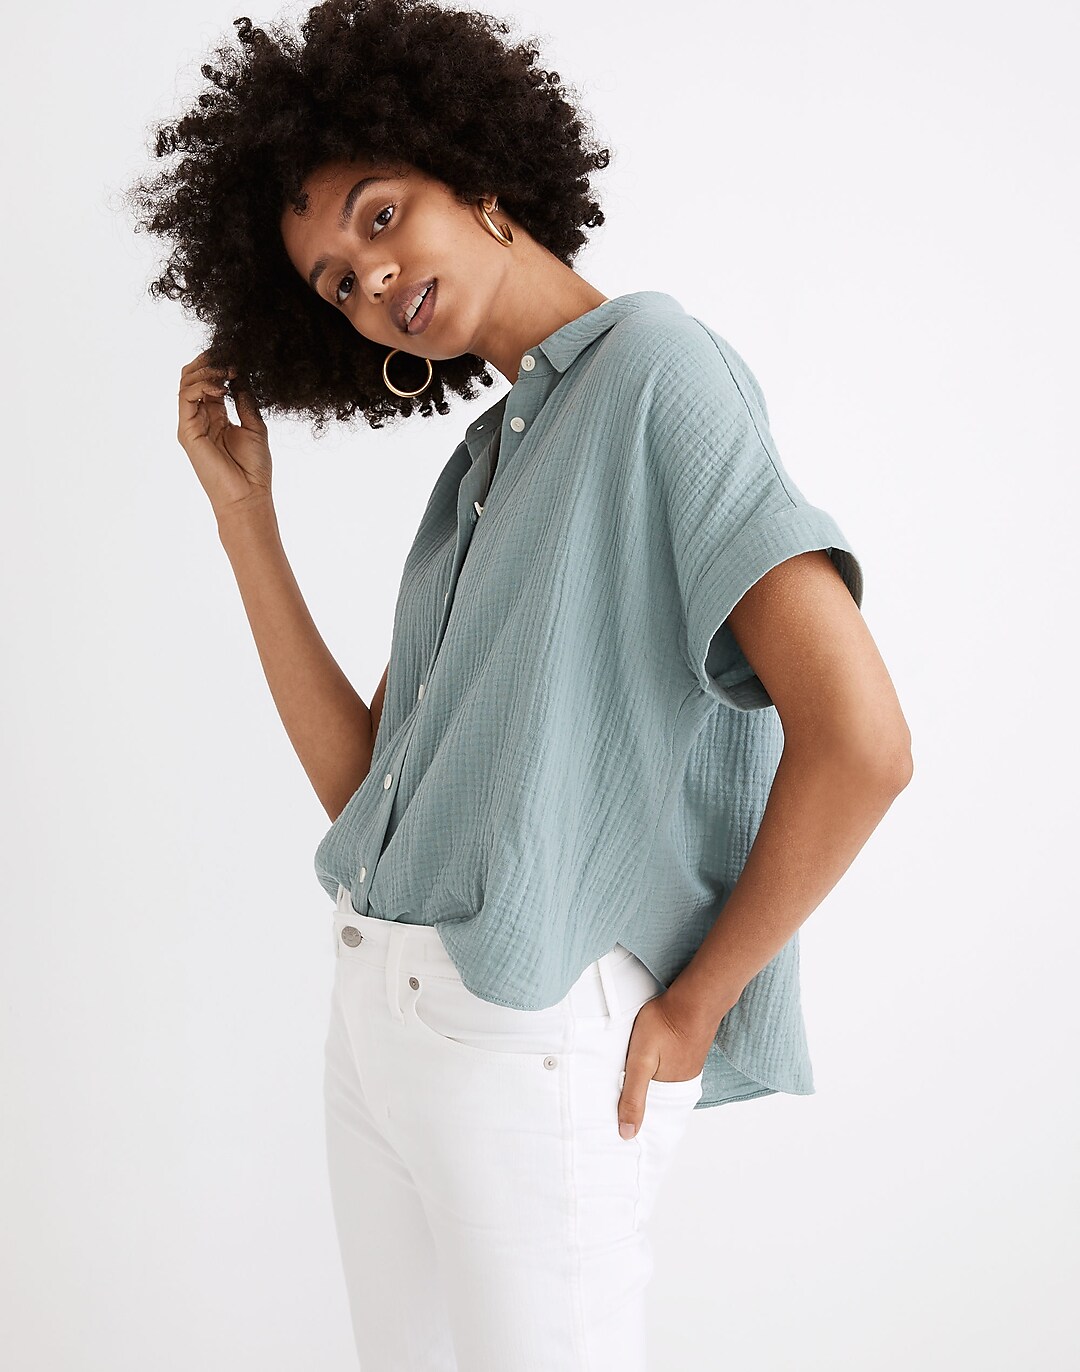 Madewell Women's Short-Sleeve Denim Button-Up Shirt